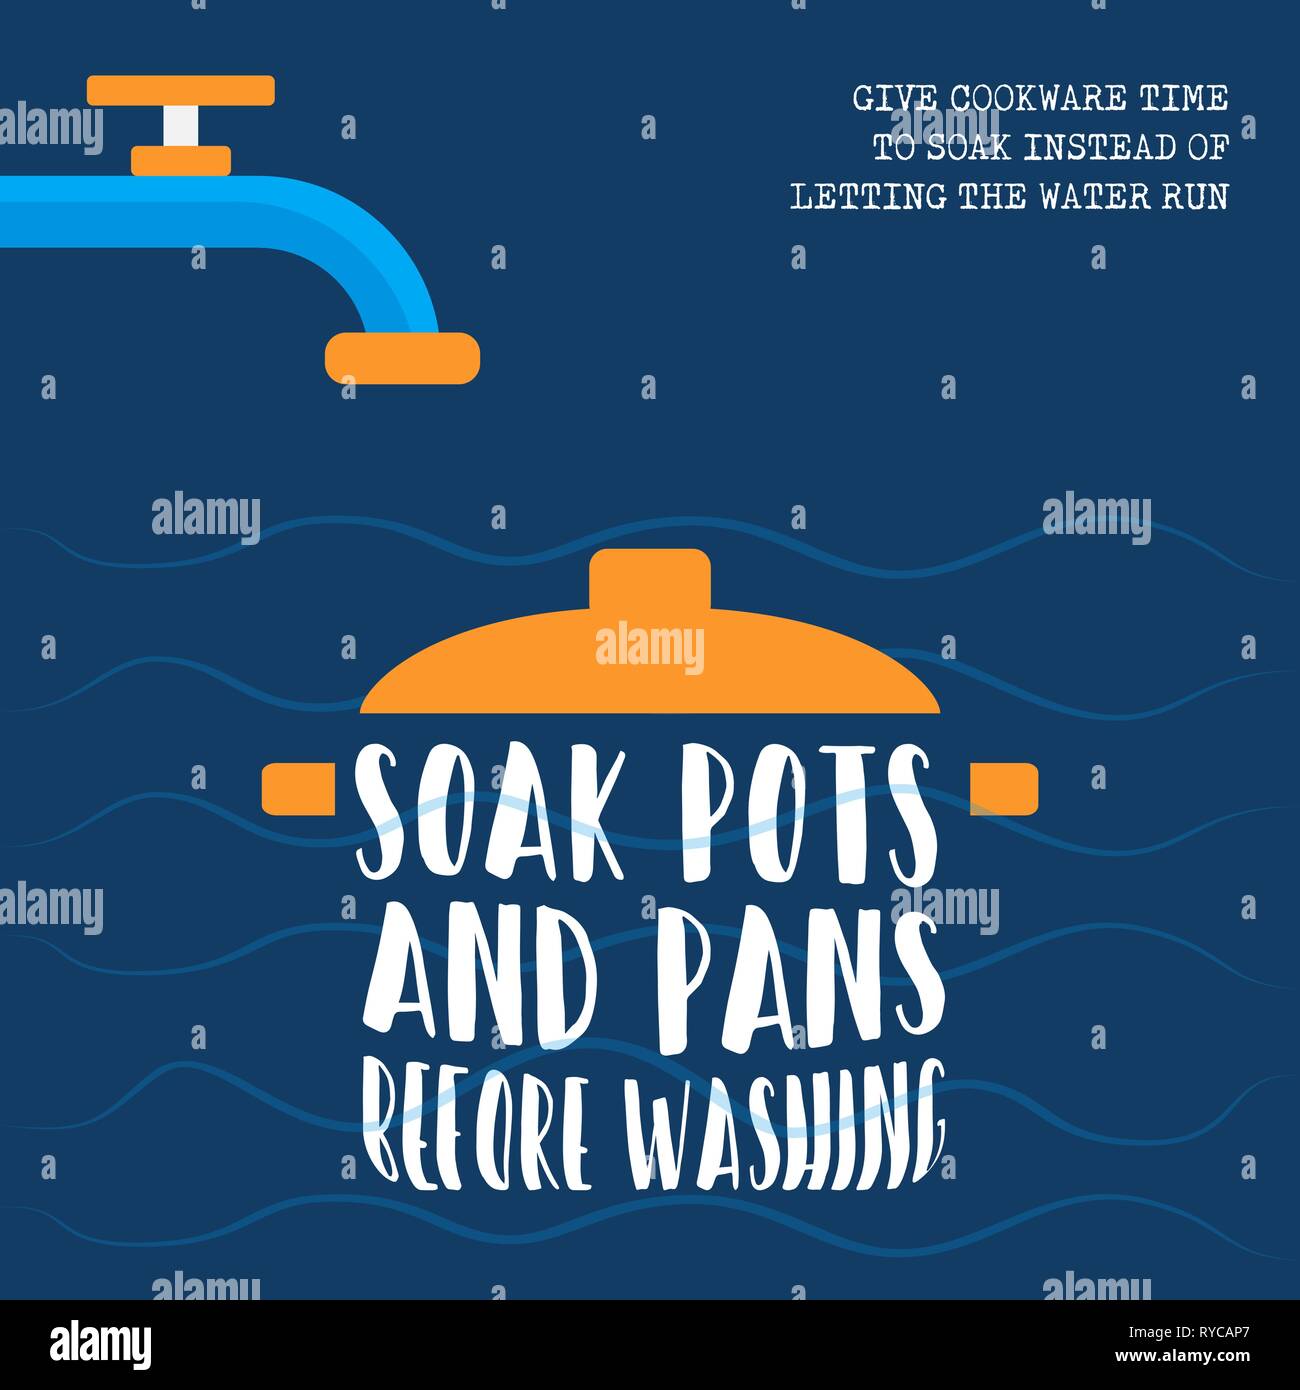 Weltwassertag Abbildung mit nachhaltigen umweltfreundlichen Lebensstil Informationen, Küche tools genießen Sie vor dem Waschen. Stock Vektor